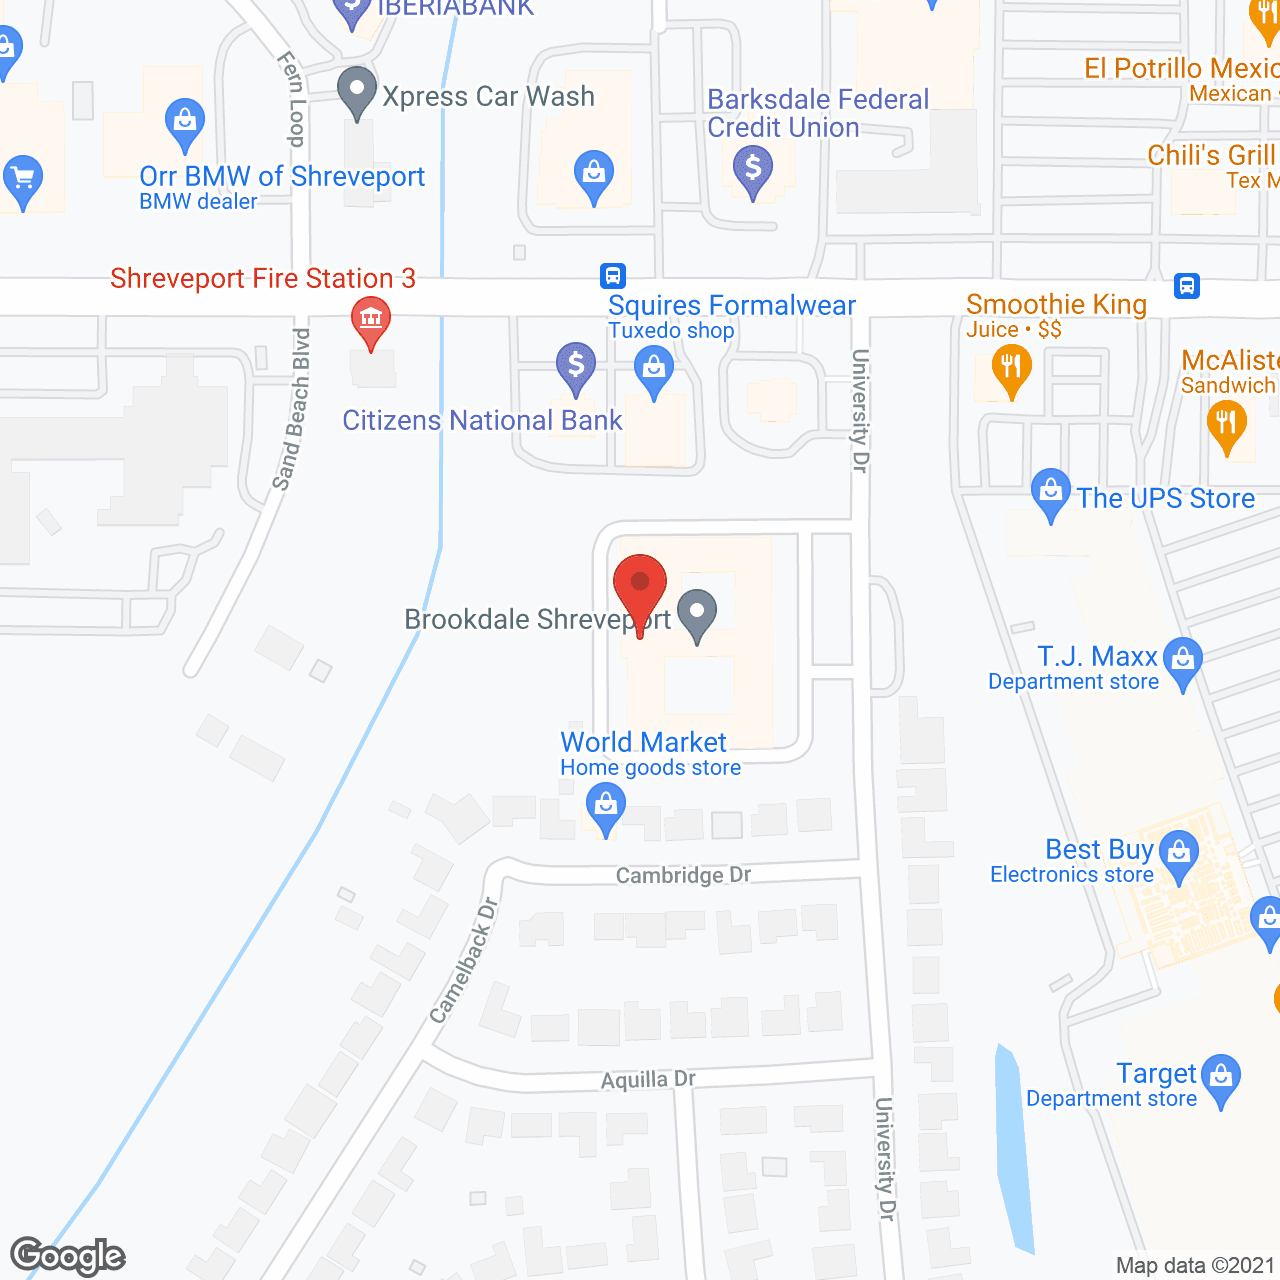 Brookdale Shreveport in google map